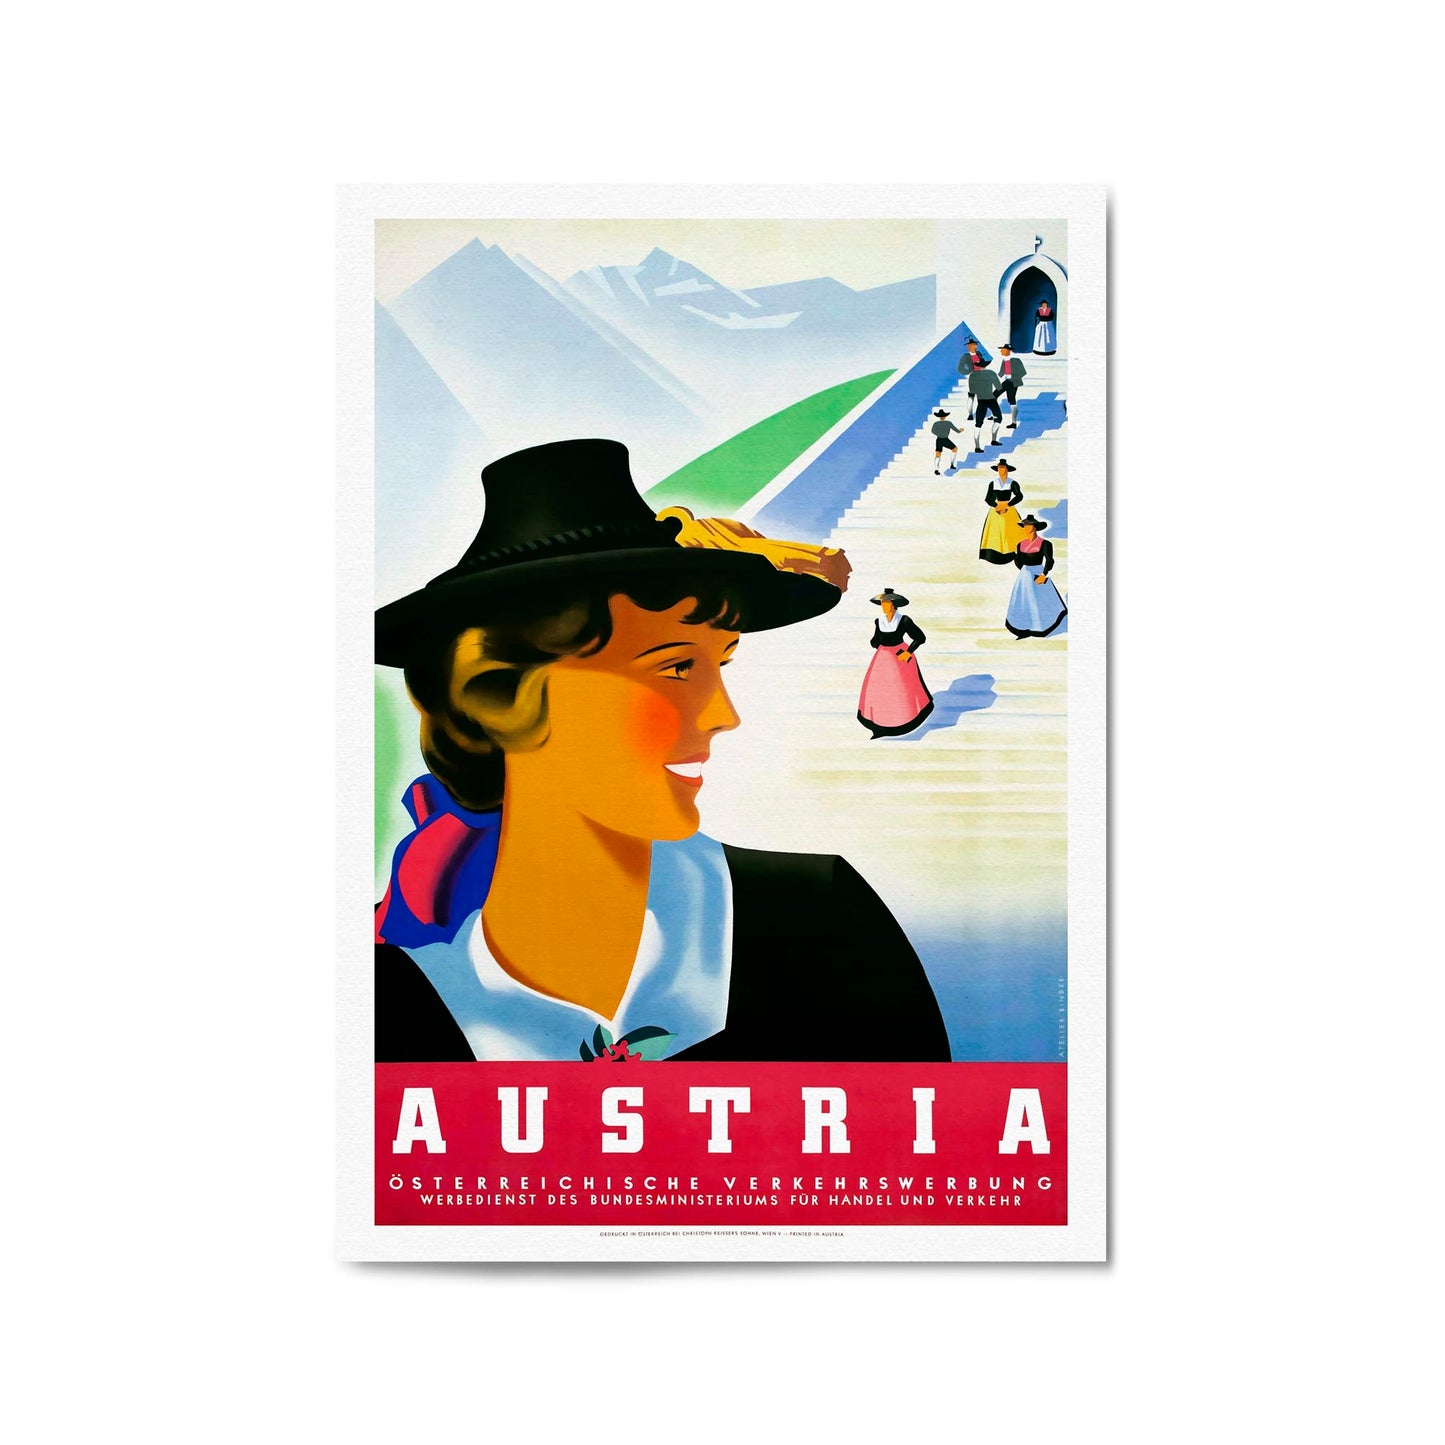 Austrian Traditions by Osterreichische Verkehrswerbung | Framed Vintage Travel Poster